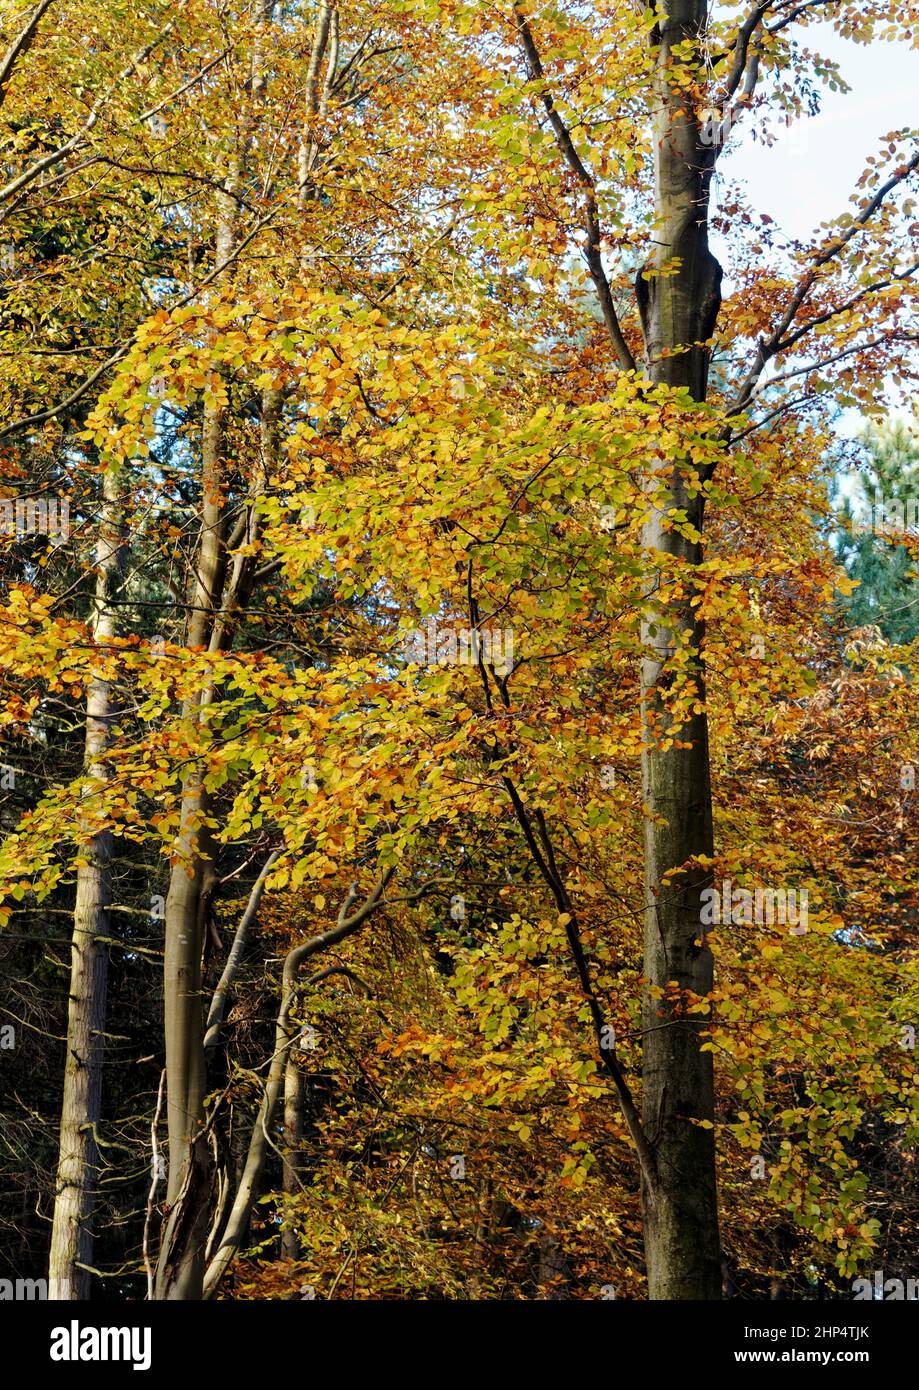 Los árboles de haya en el sol del otoño que proporcionan colores brillantes del otoño en Witton Woods (a veces llamado Bacton Woods) cerca de North Walsham, Norfolk. Foto de stock